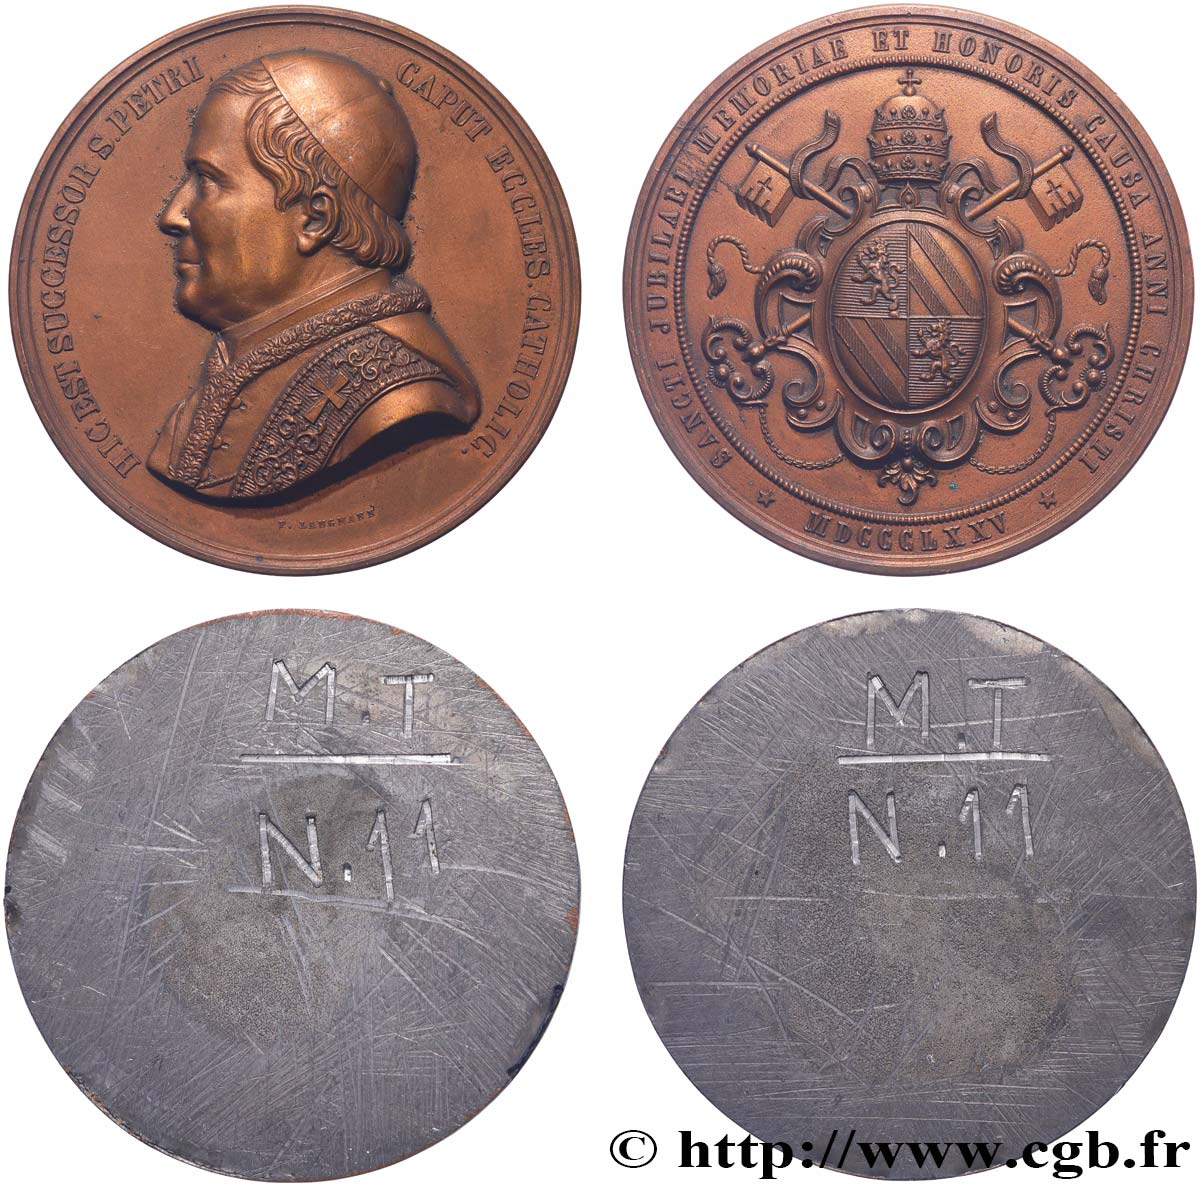 ITALY - PAPAL STATES - PIUS IX (Giovanni Maria Mastai Ferretti) Médaille, Jubilé épiscopal du pontife, tirages unifaces de l’avers et du revers AU